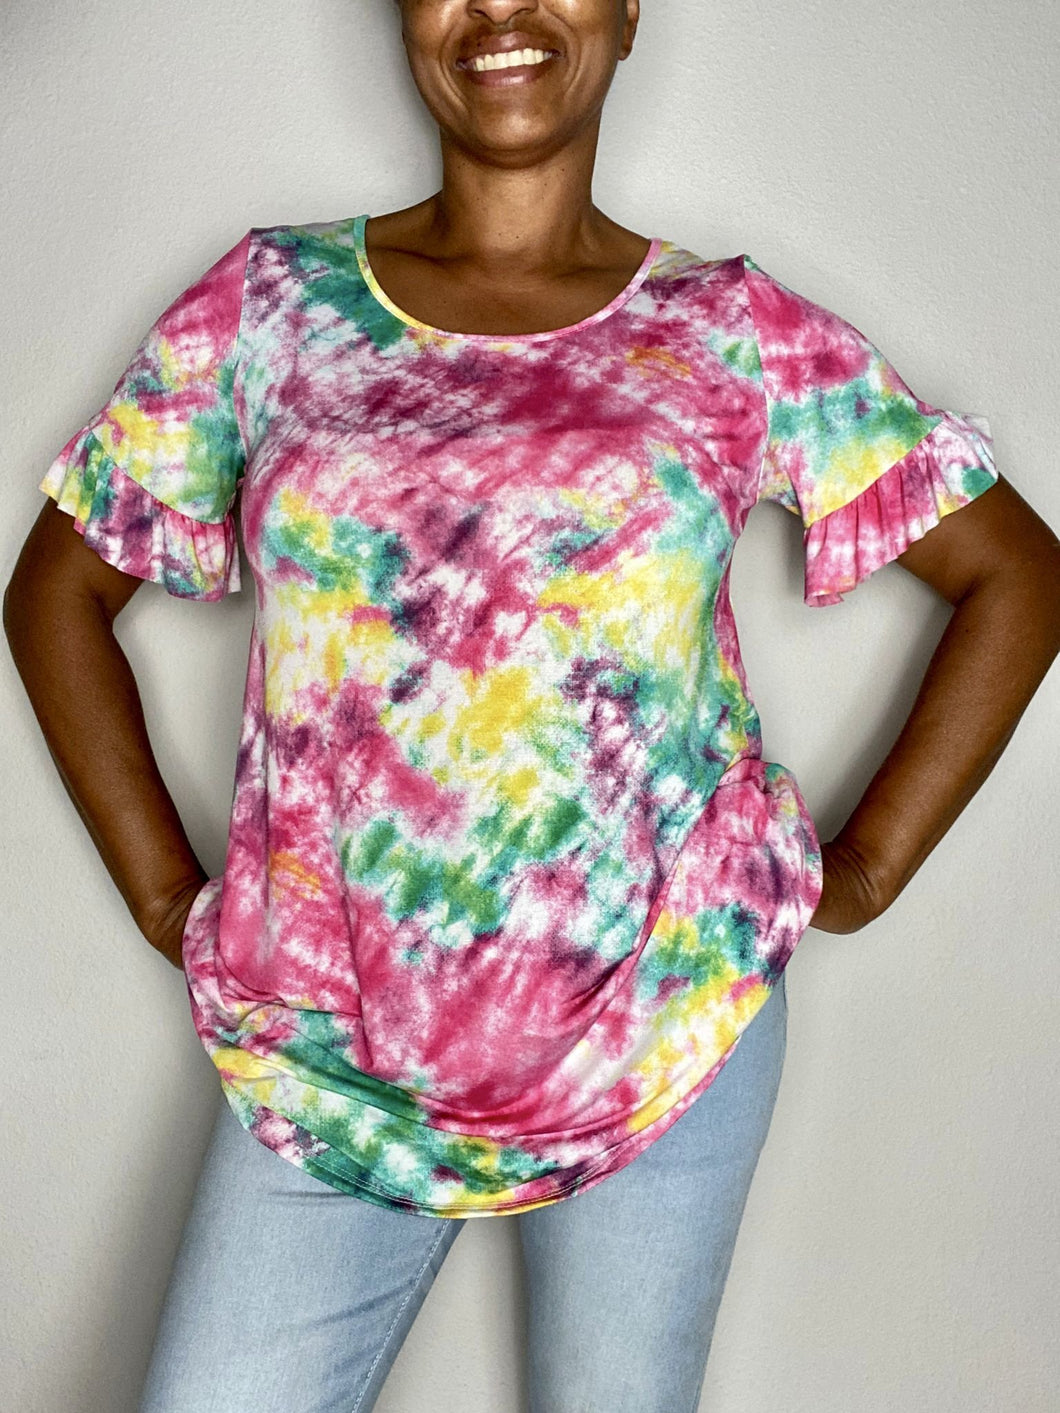 Tye-Dye Tunic Multi-Color Top - Pamela's Younique Boutique